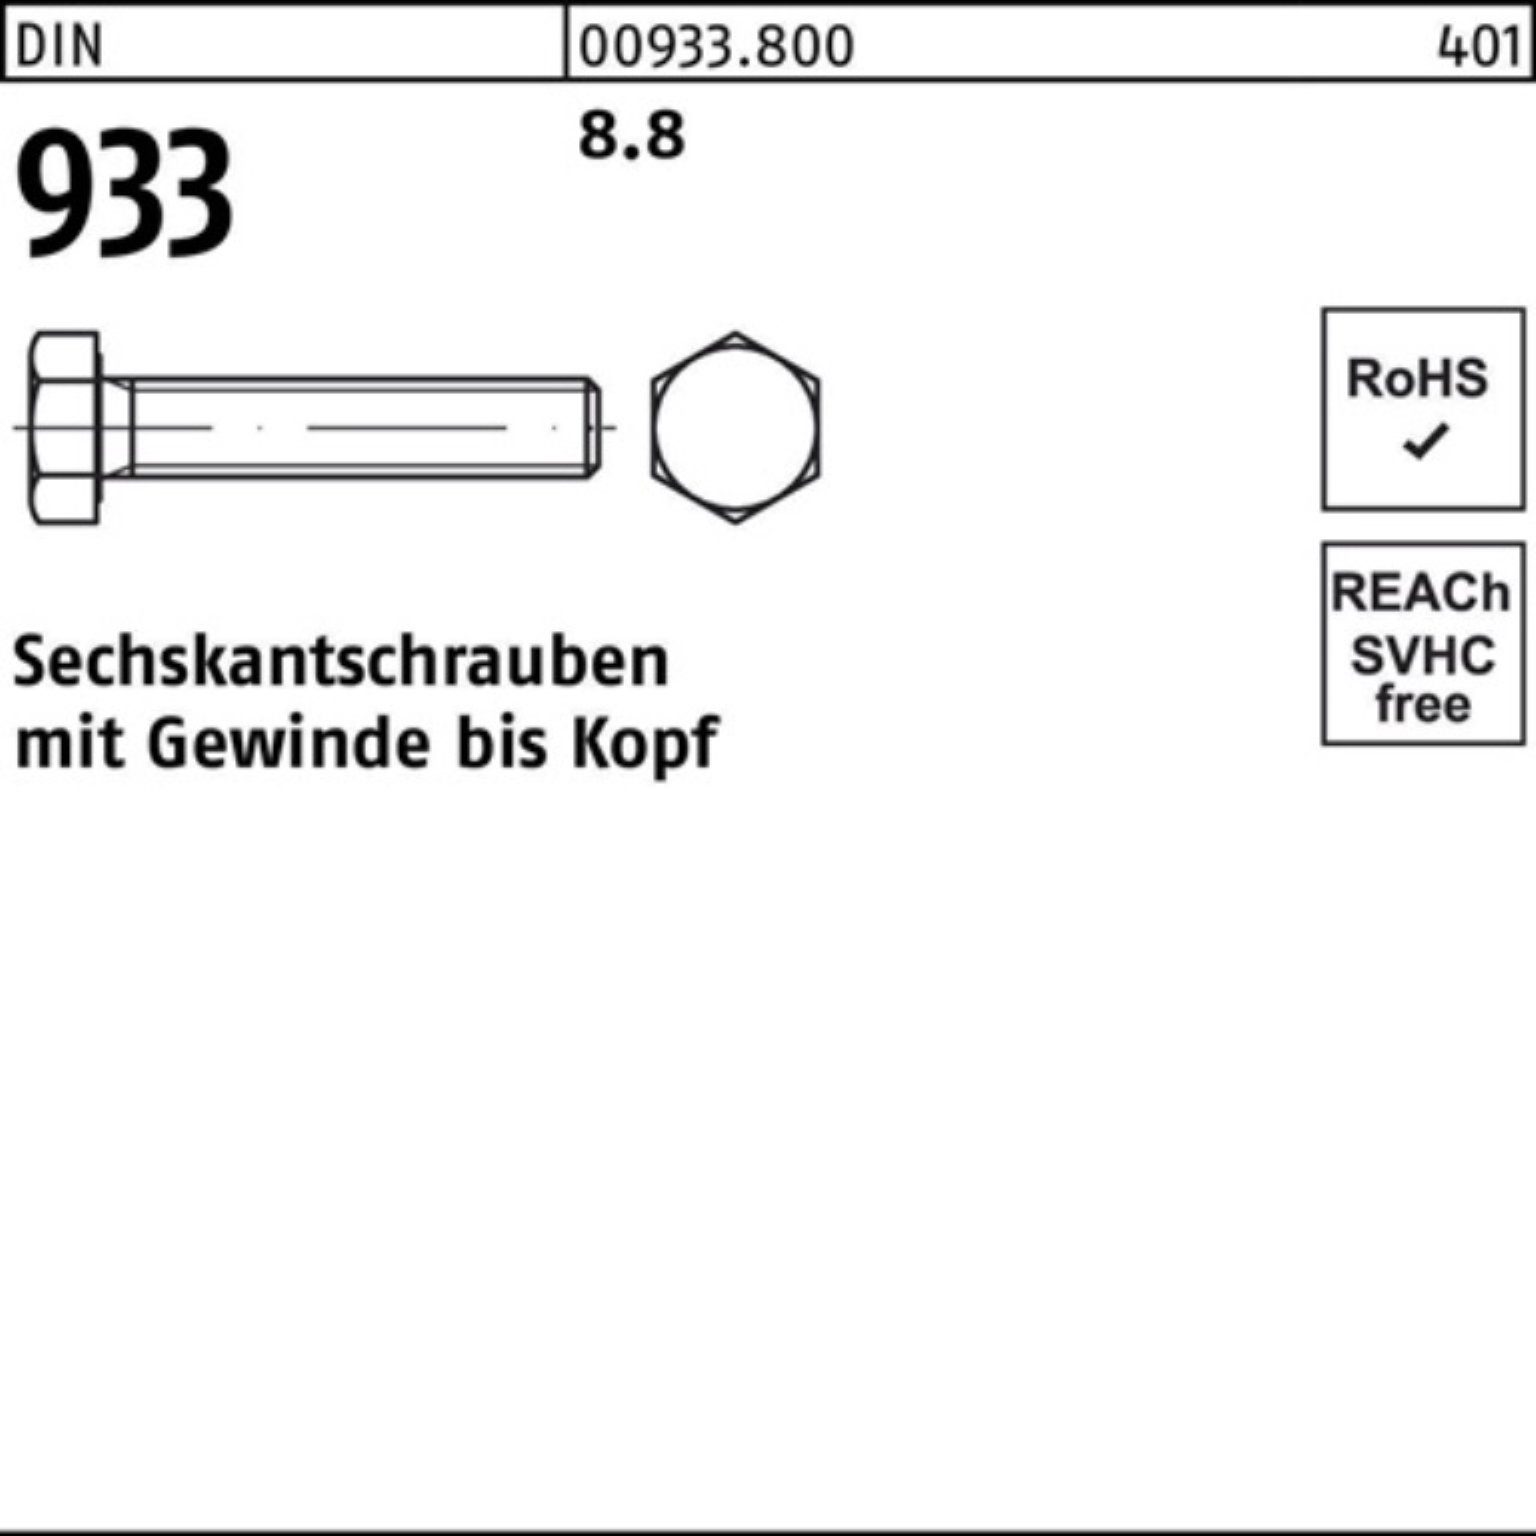 VG Stück Sechskantschraube Sechskantschraube 500 8.8 933 M5x Reyher Pack 933 DIN 500er DIN 22